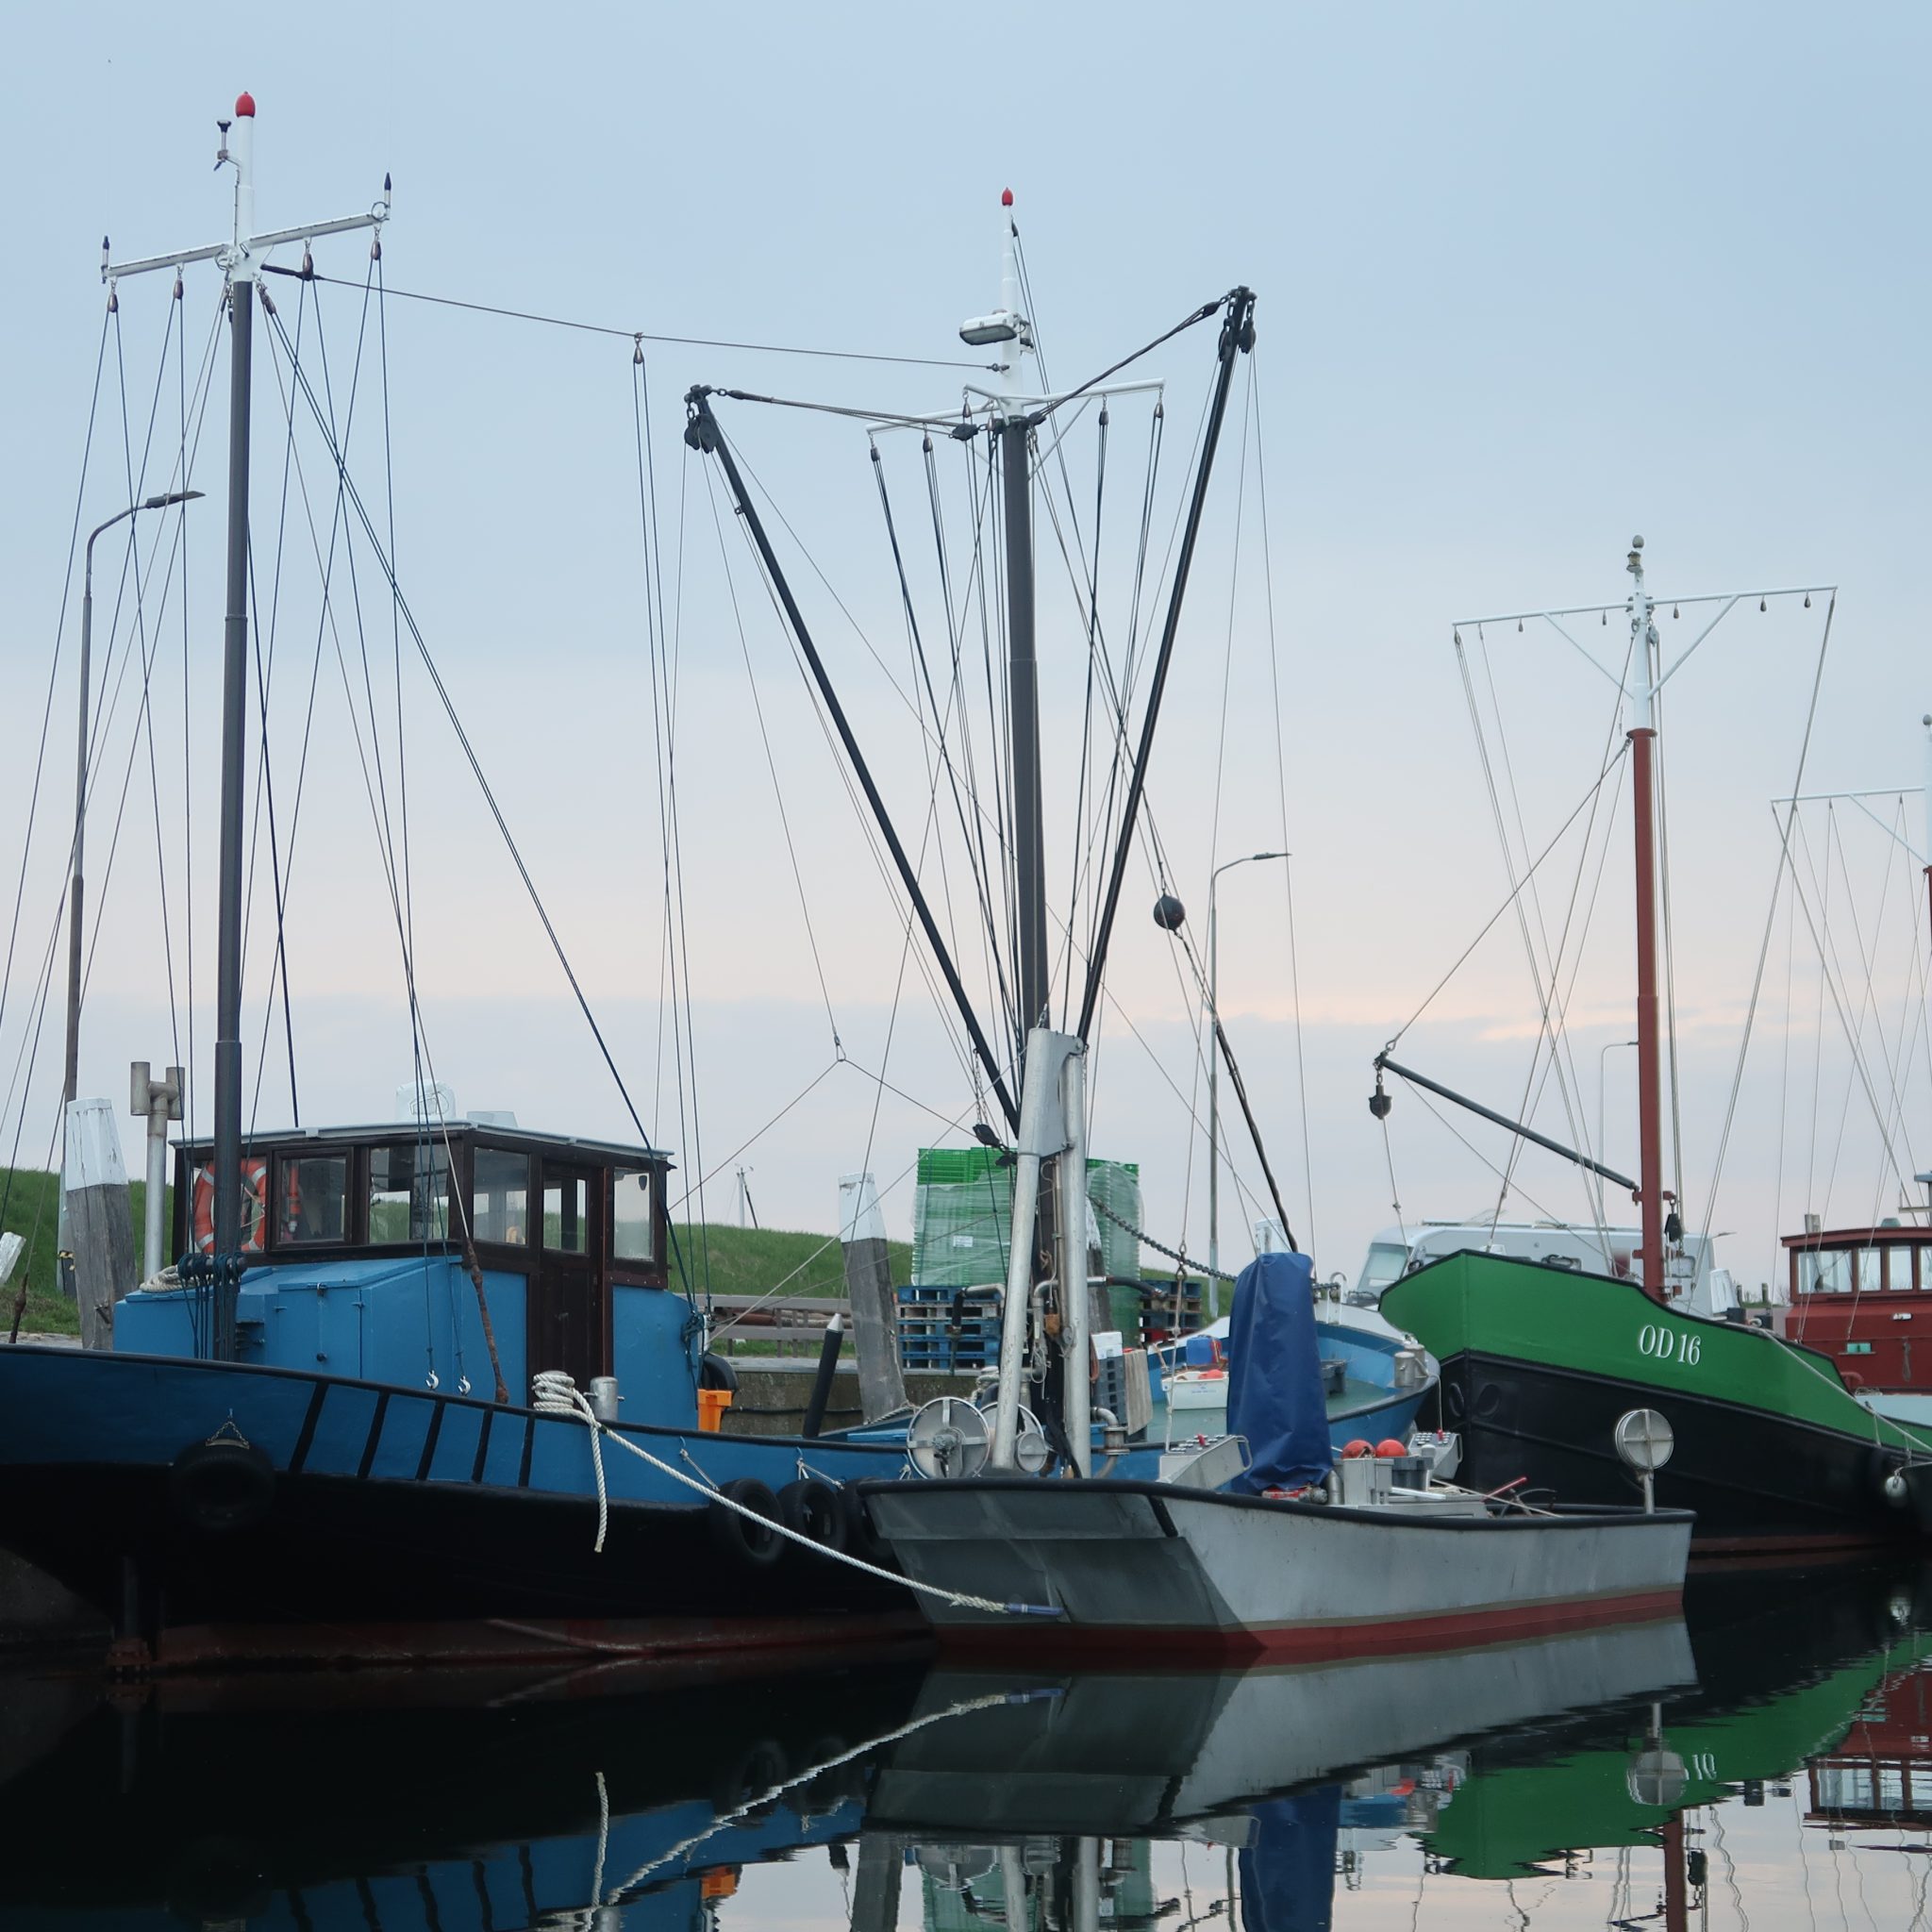 De OD-14 en de OD-16 zijn de enige twee kotters uit Ouddorp die jaarlijks deelnemen aan de visserij op Oosterscheldekreeft. (Foto W.M. den Heijer)